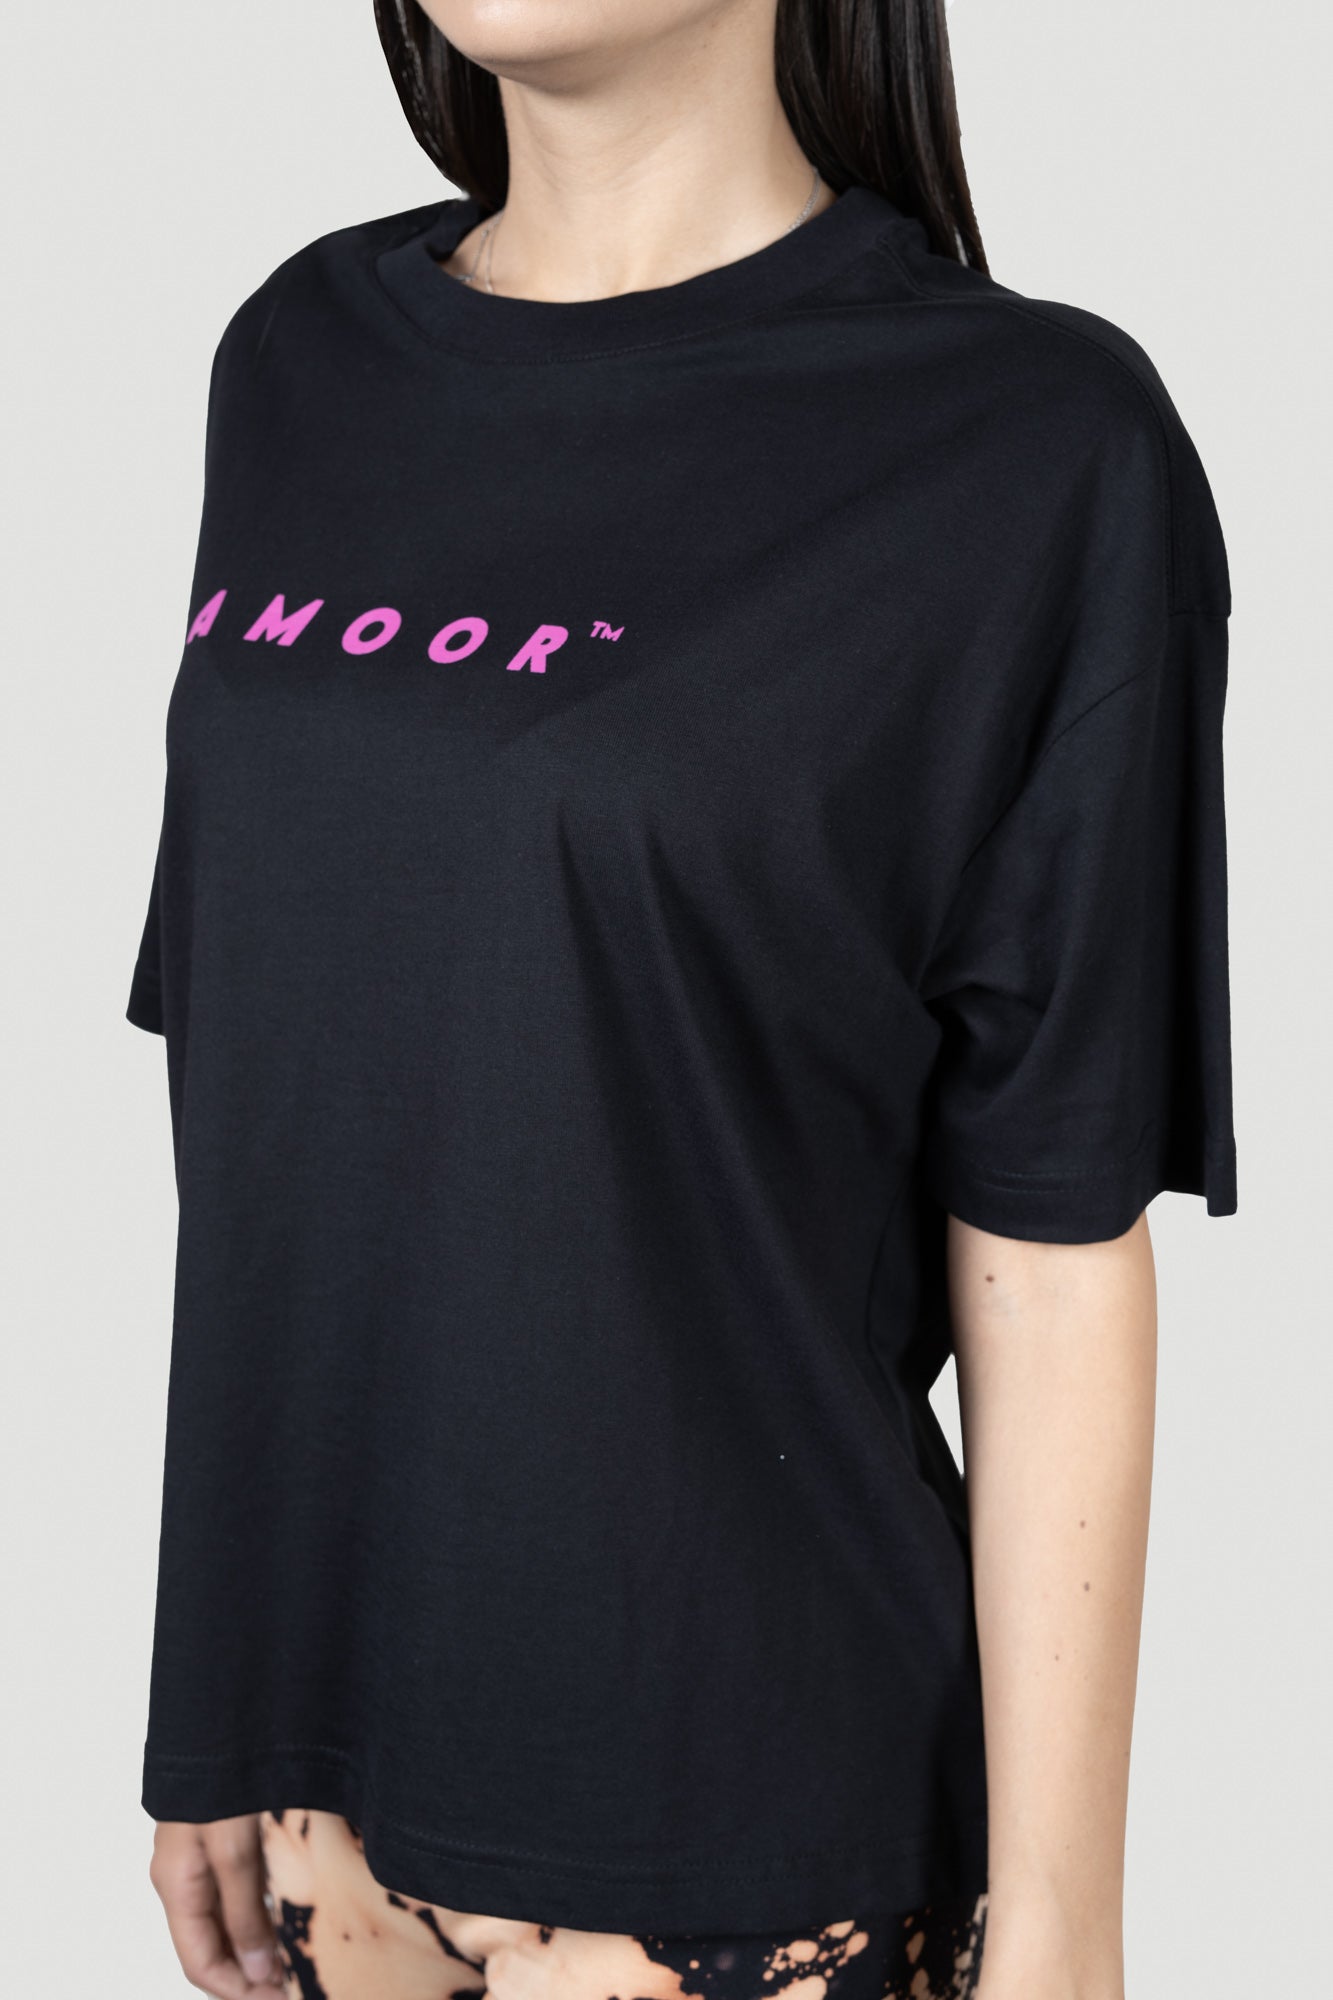 T-shirt Amoor TM